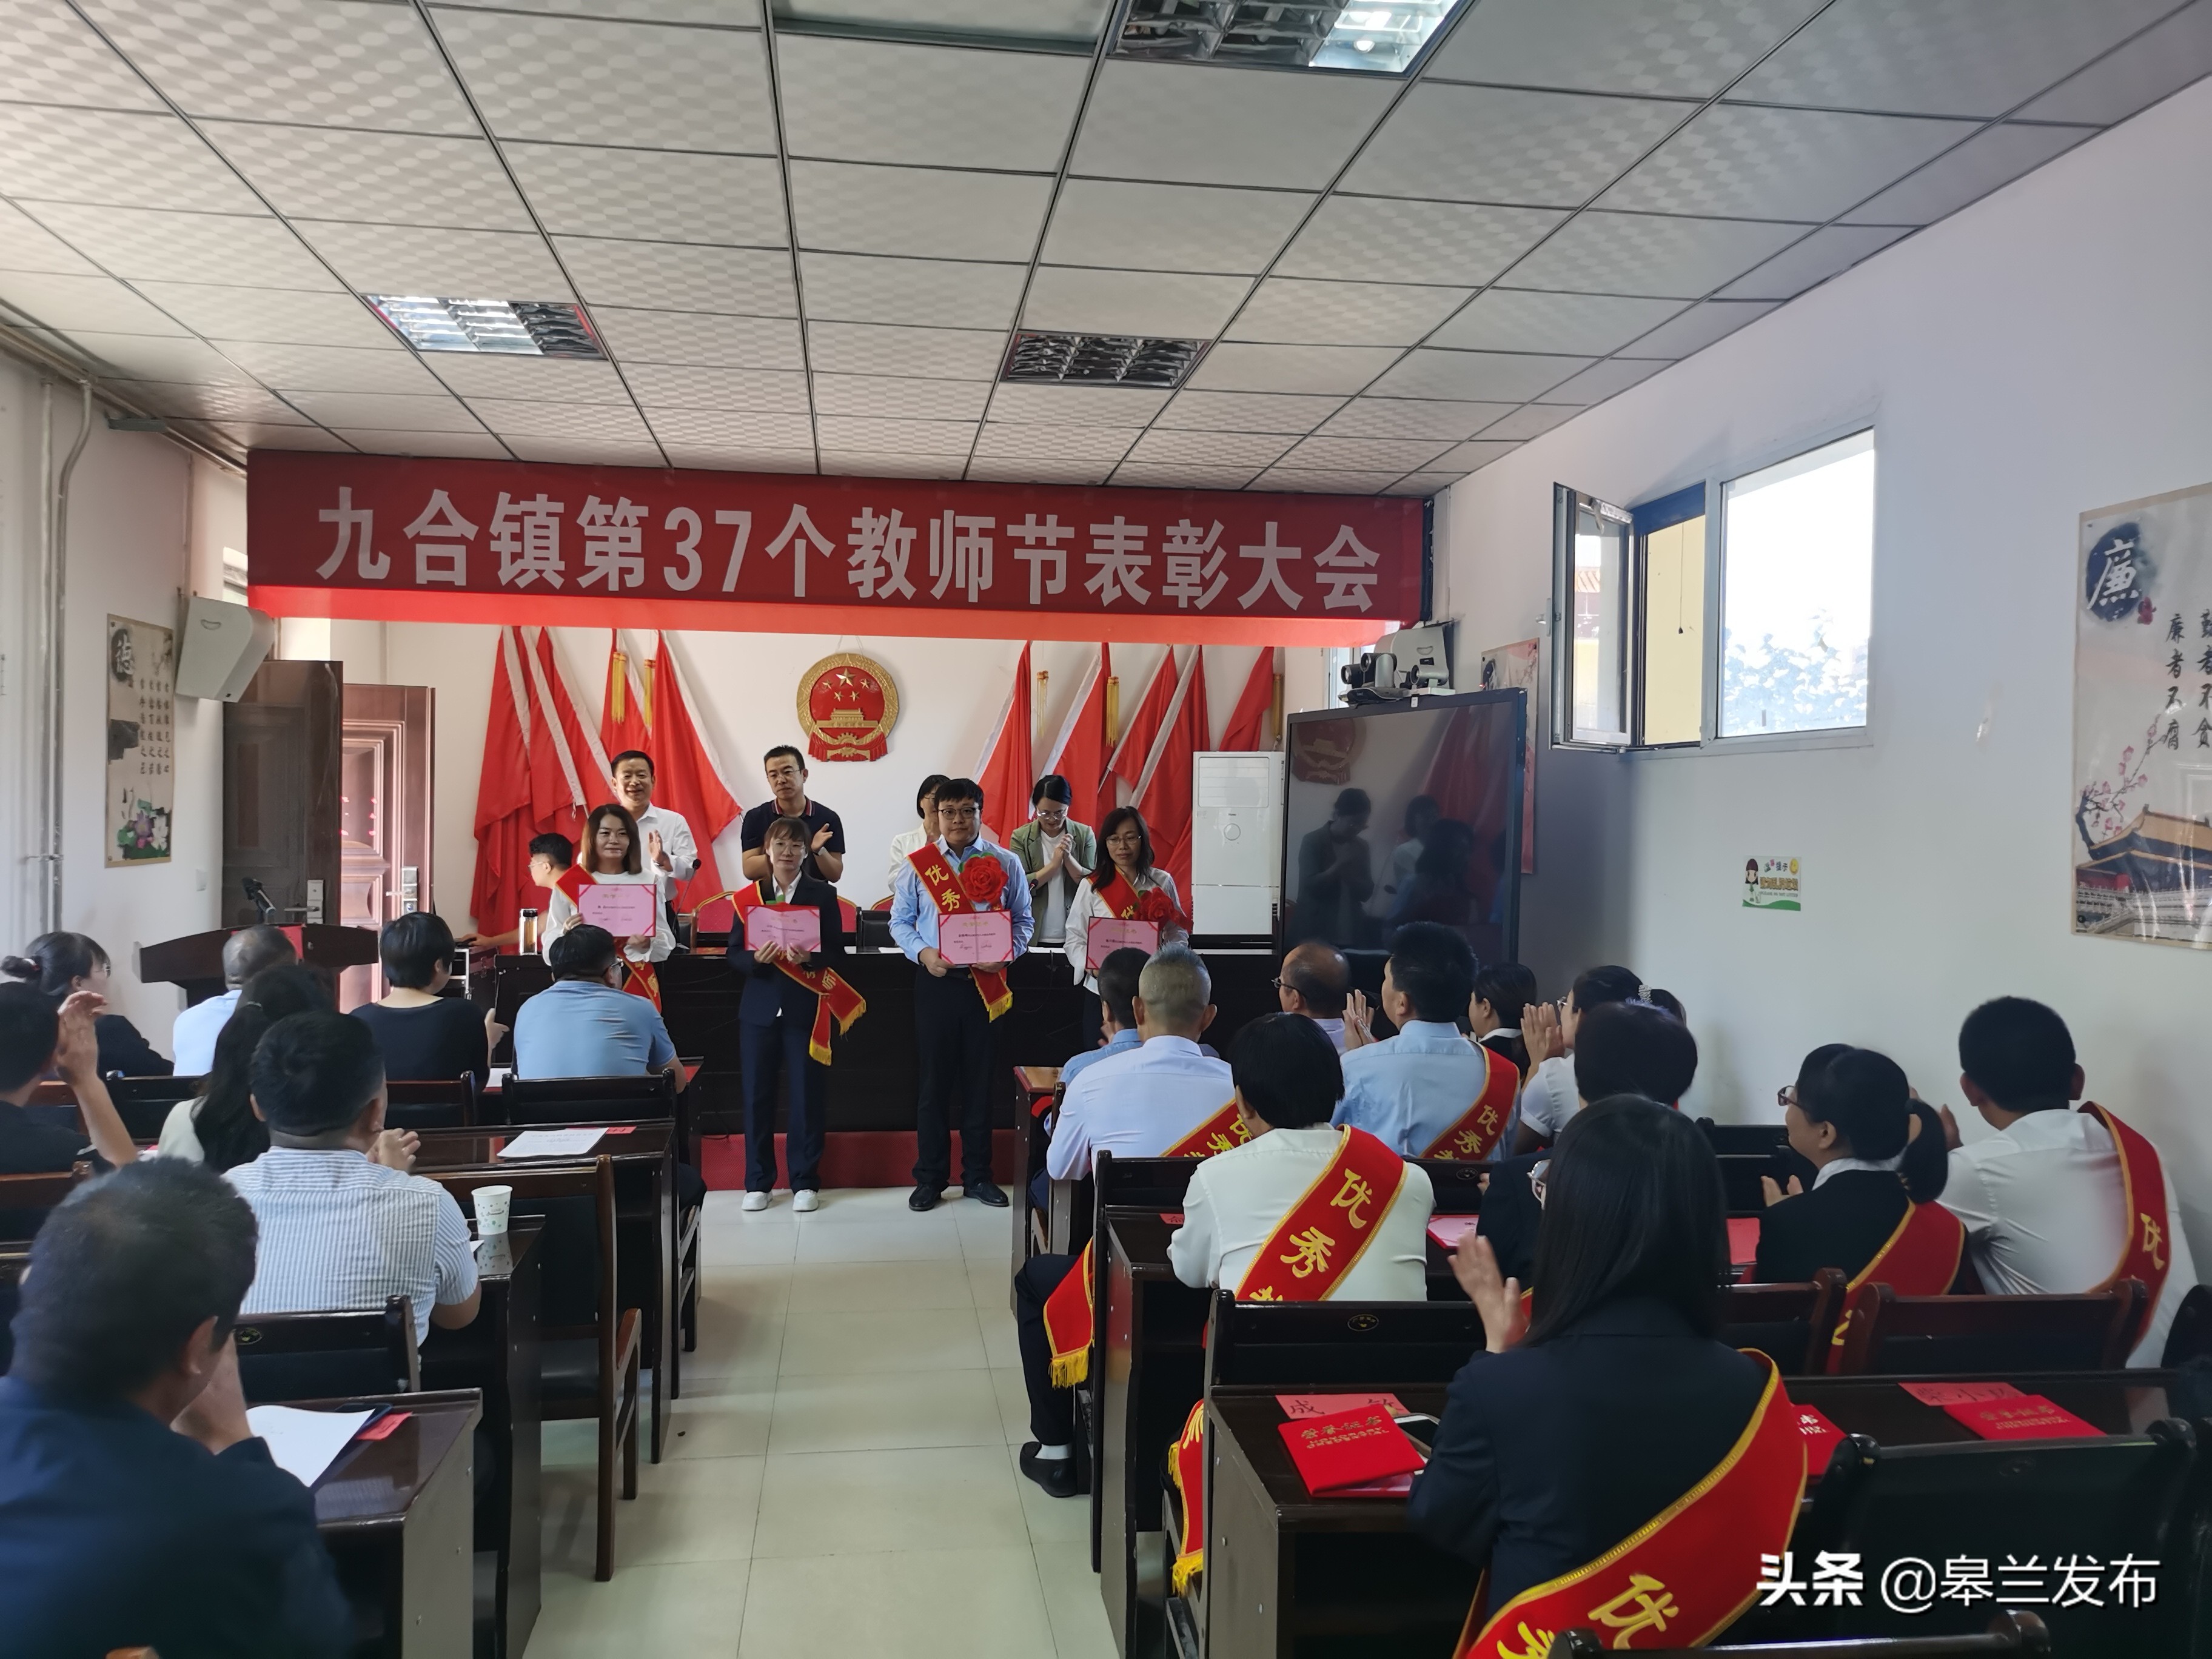 皋兰县九合镇召开庆祝第37个教师节暨表彰大会